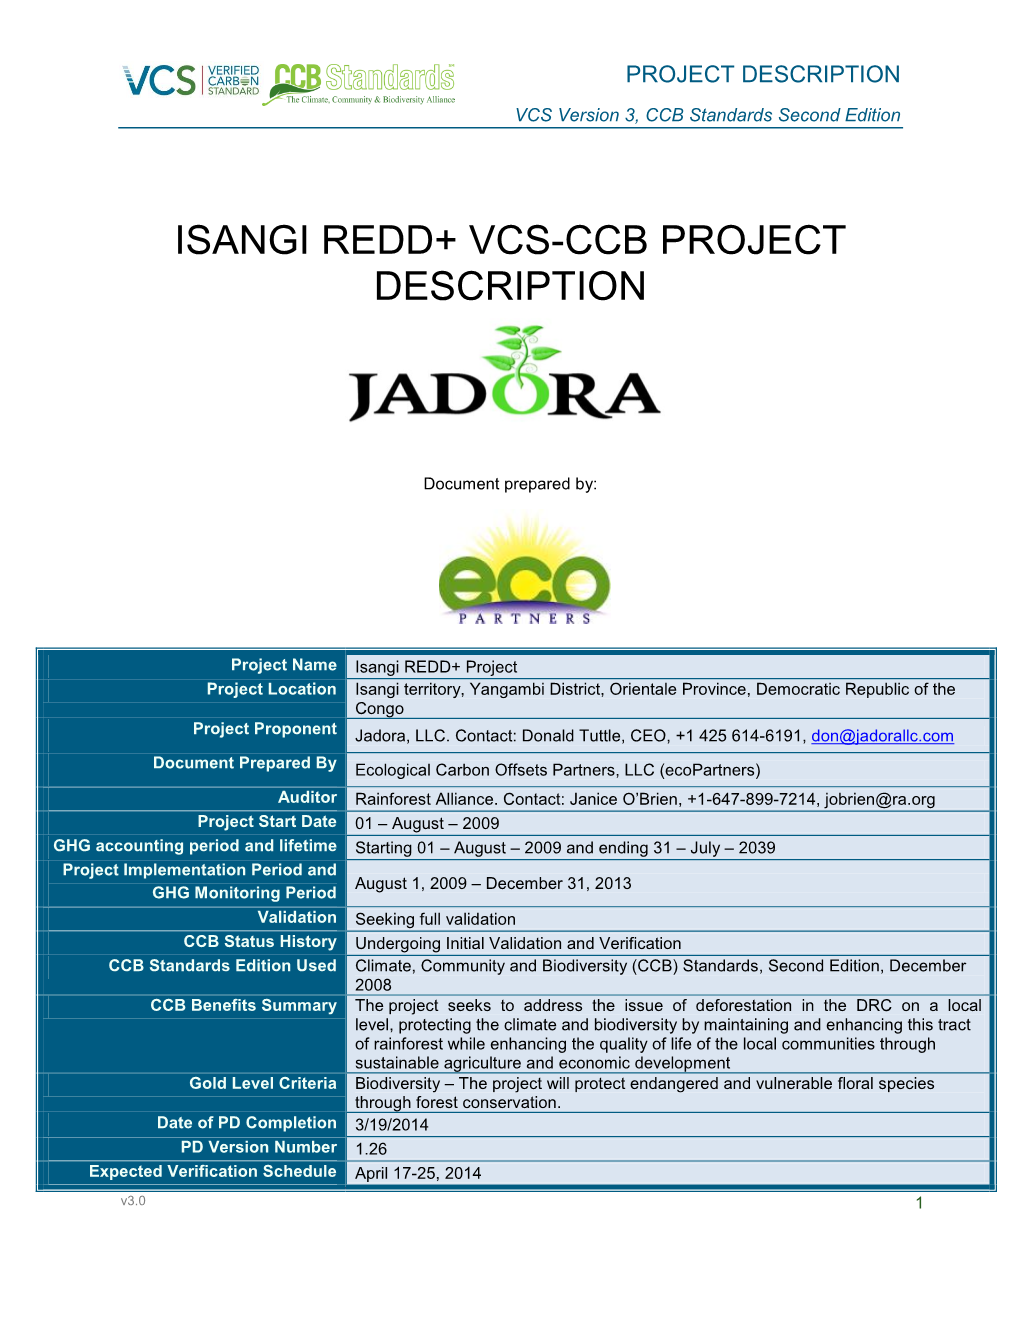 Isangi Redd+ Vcs-Ccb Project Description